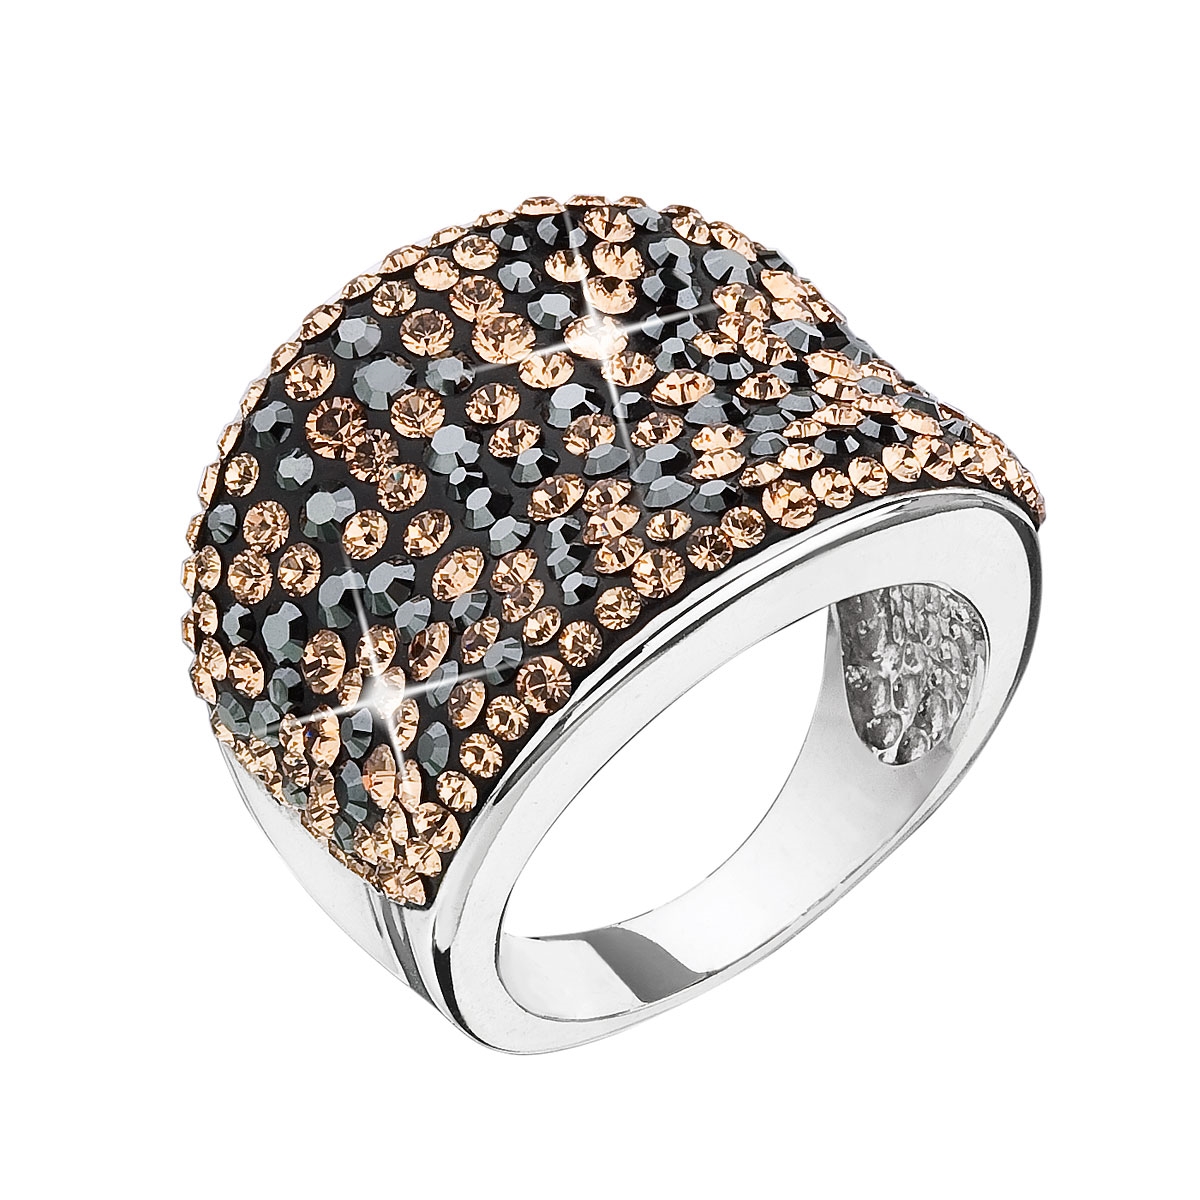 Strieborný prsteň s kryštálmi Swarovski čierno zlatý colorado